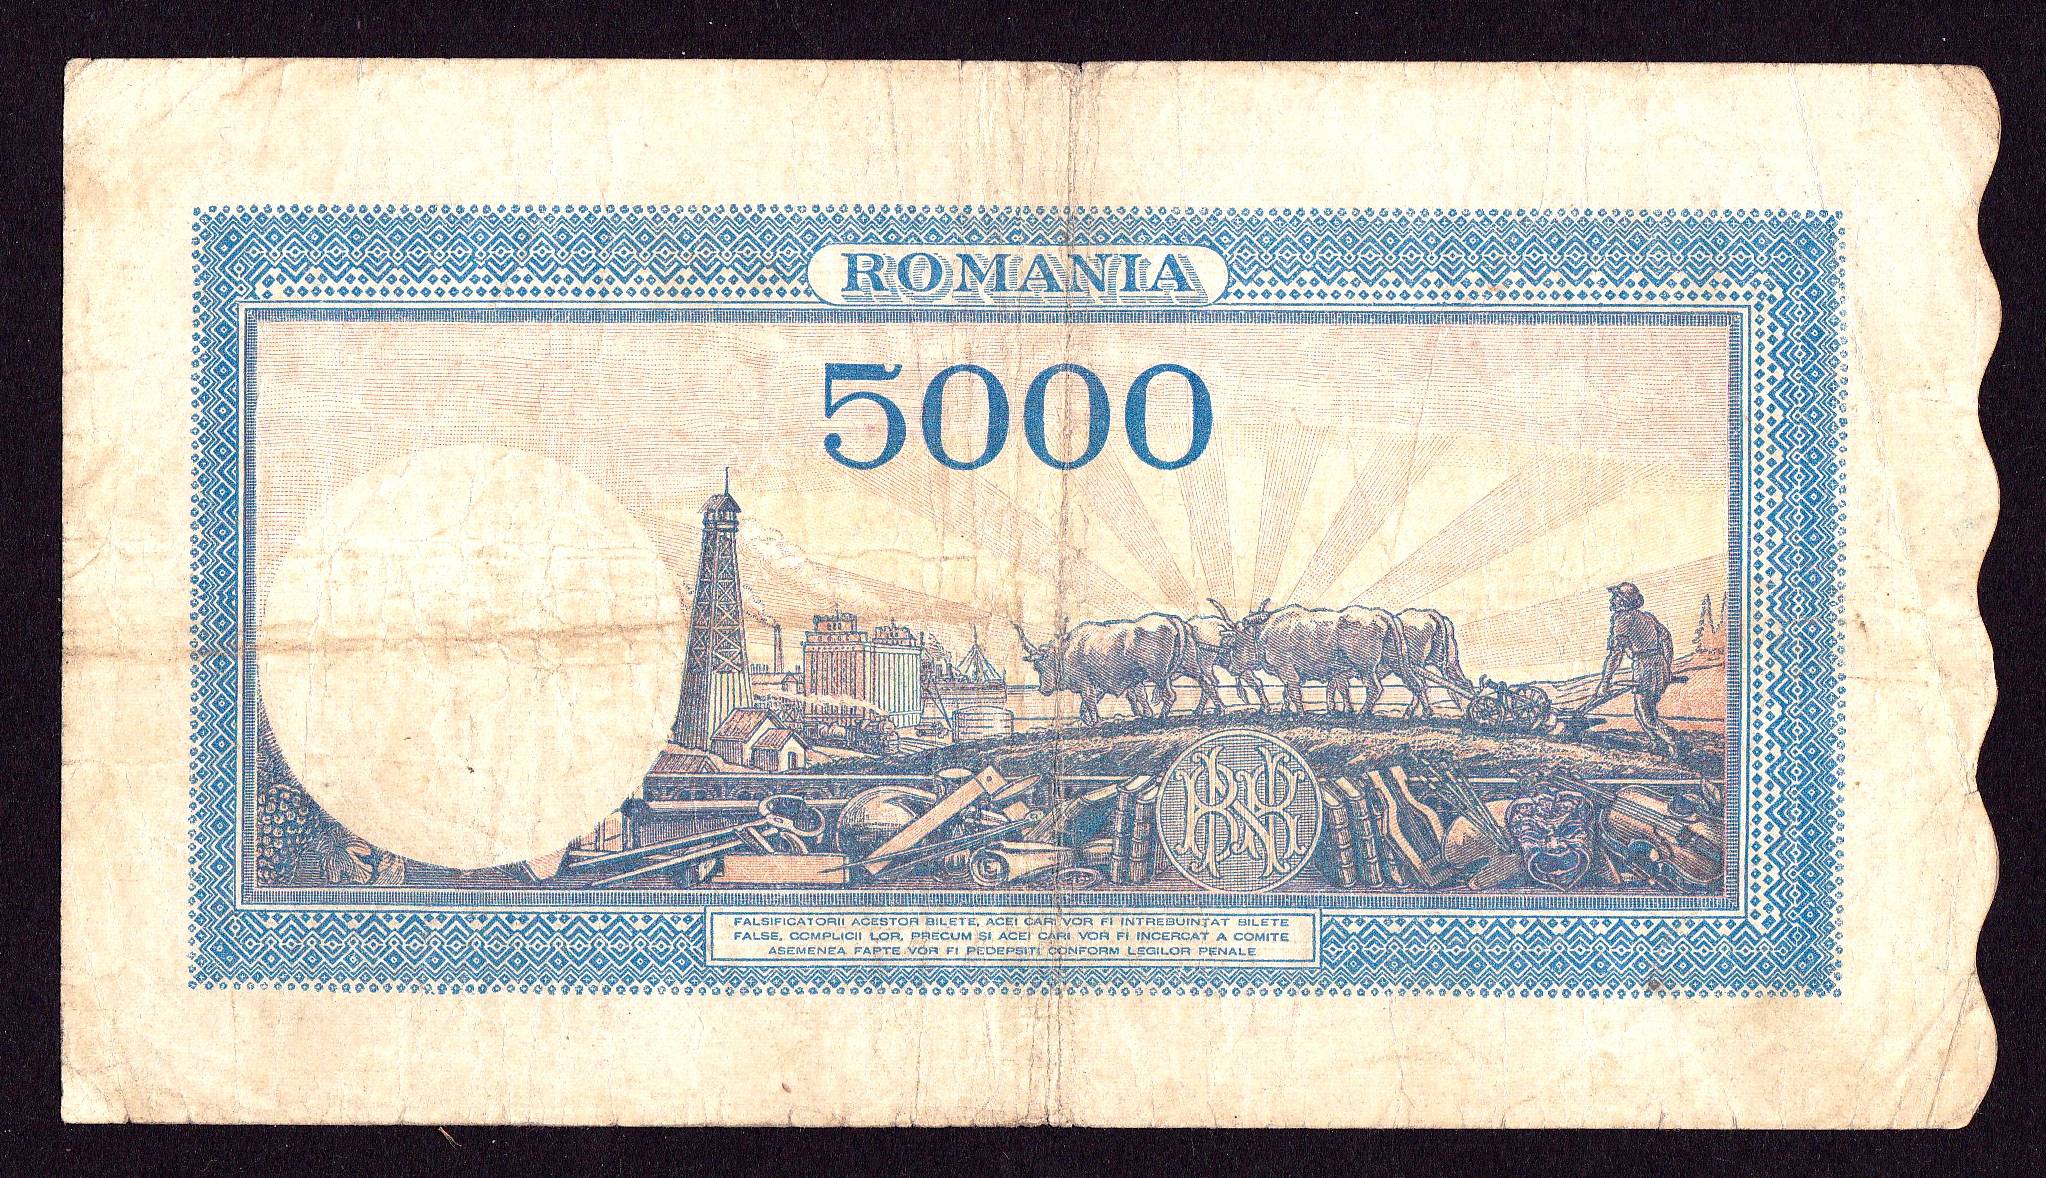 5000 лей в рублях. Румыния 5000 лей 1944. 5000 Румынских лей. 5000 Лей. 500 Лей 1945 Румыния.